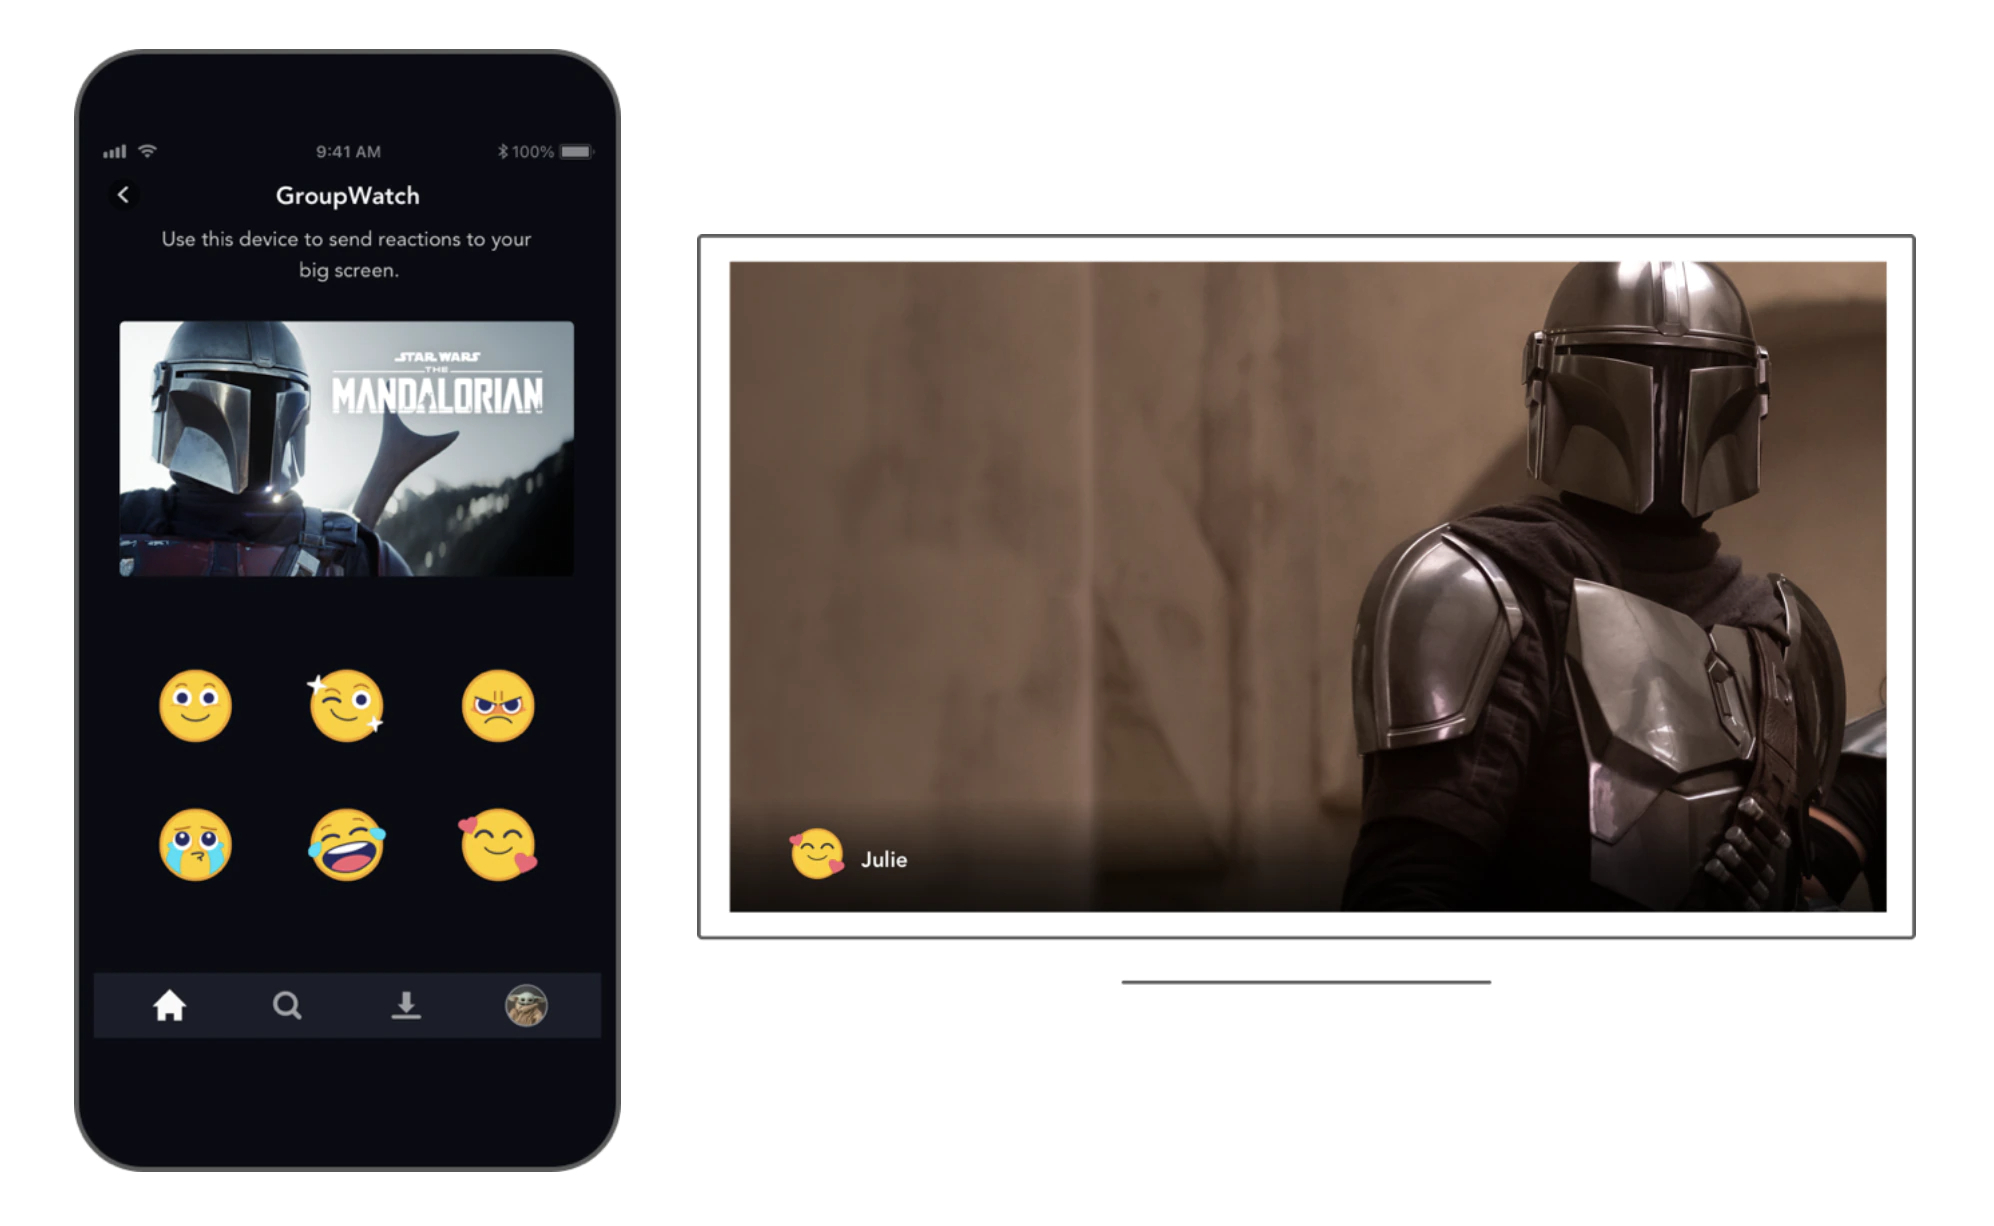 A sinistra, immagine del promo "The Mandalorian" sopra le sei emoji che puoi usare; a destra, ancora dal film e una faccina con emoji a cuori.